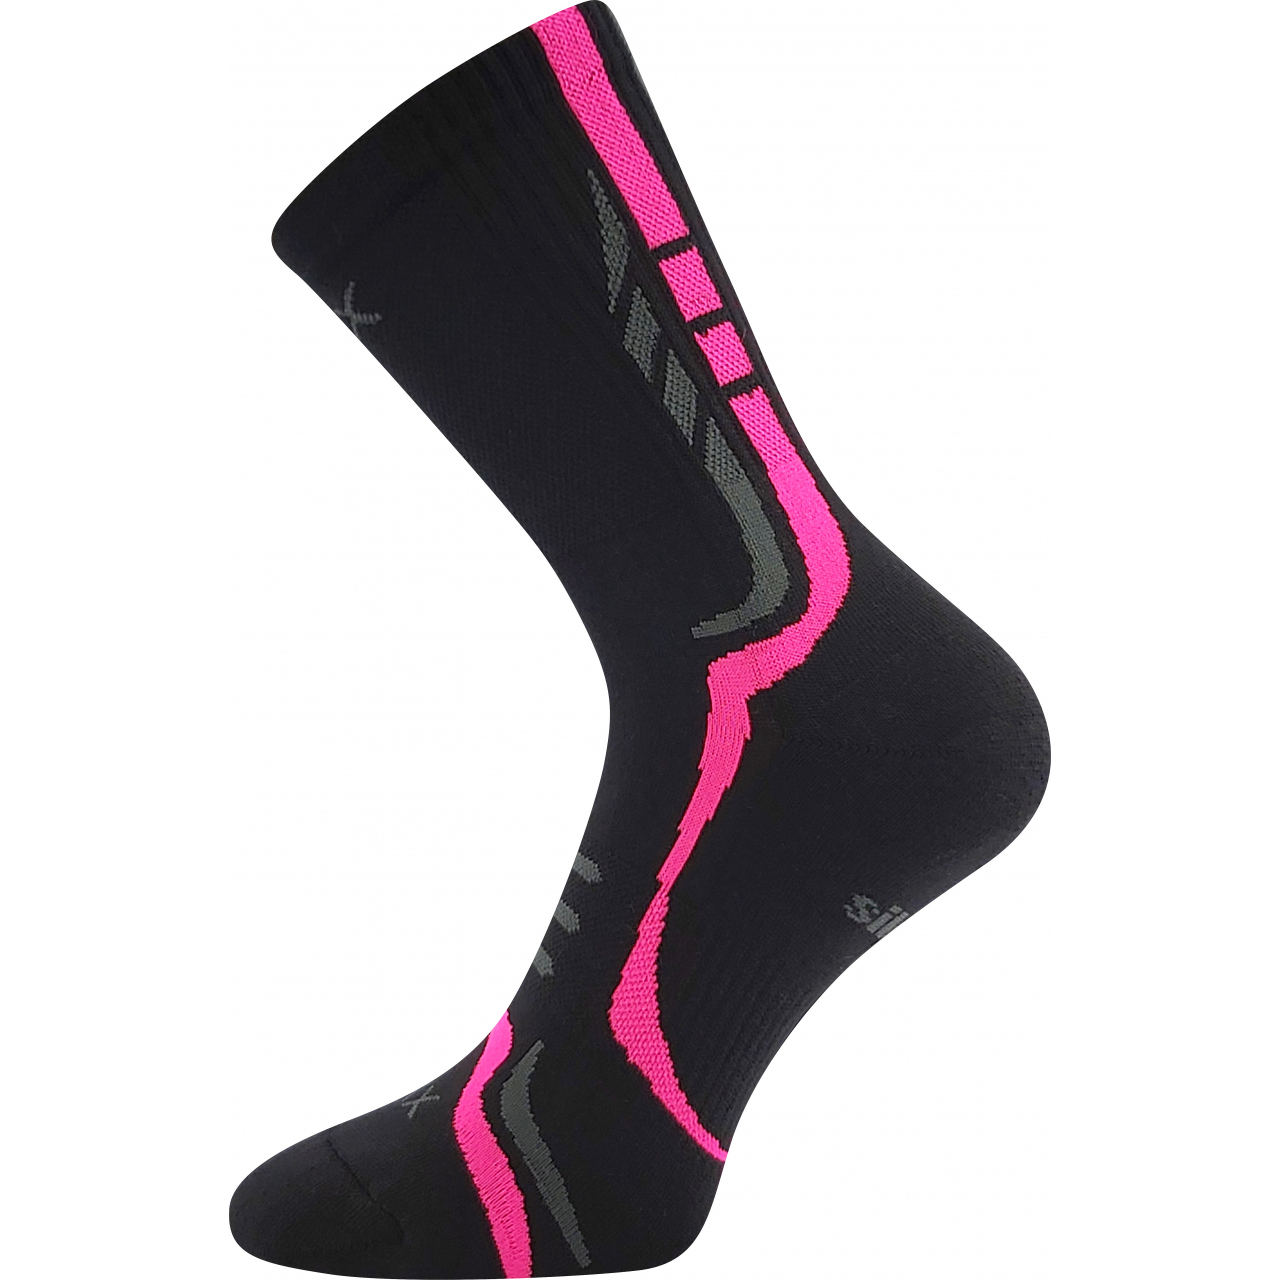 Ponožky sportovní unisex Voxx Thorx - černo-růžové, 39-42